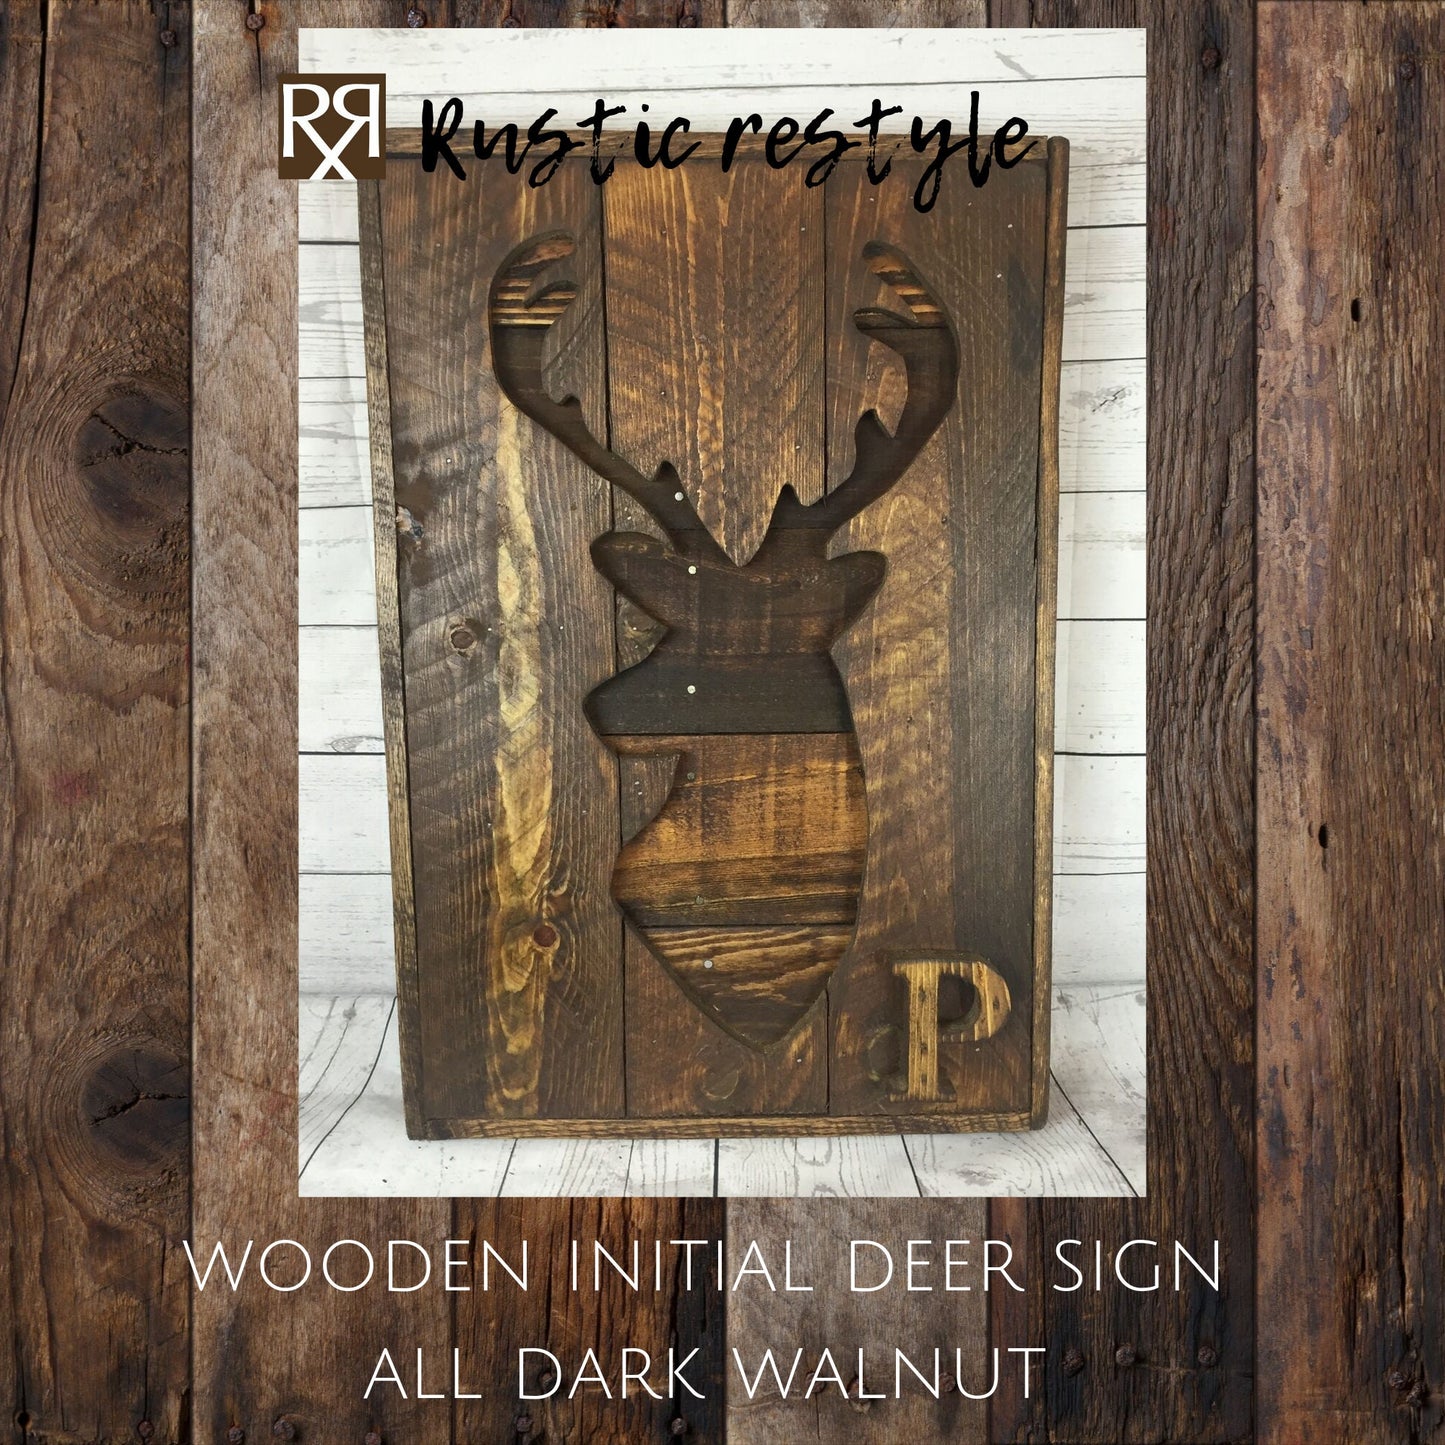 Deer head wall decor, pallet wood deer, deer silhouette, recycled pallet wood, rustic wall hanging, country deer art, rustic wood sign,